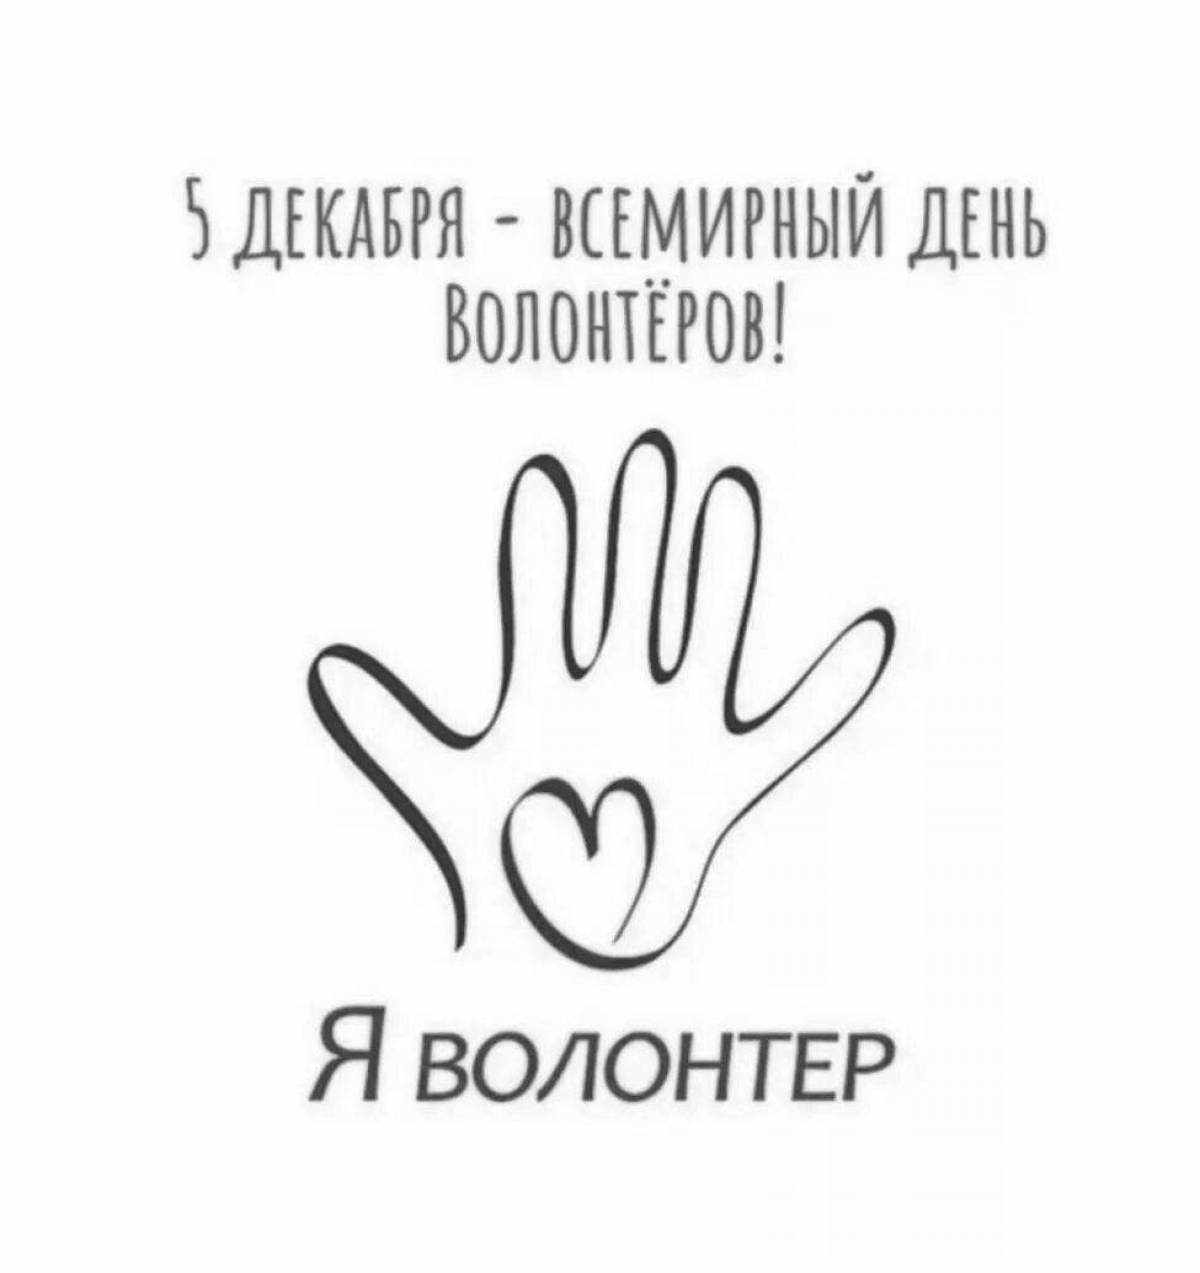 Сияющий символ волонтерства в россии